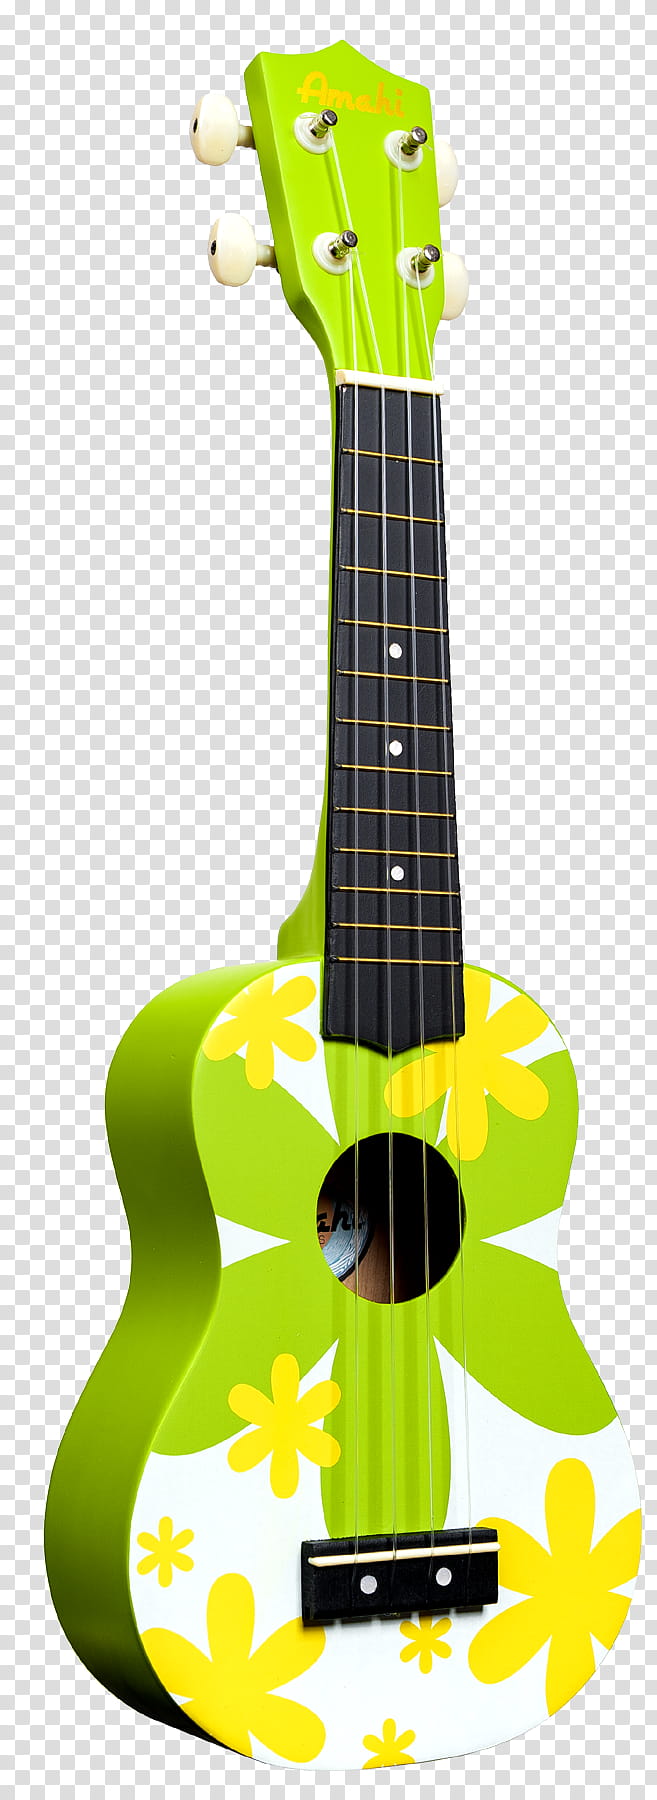 Violin, Ukulele, Music, Guitar, Flower, Koa, Green, Mandolin transparent background PNG clipart